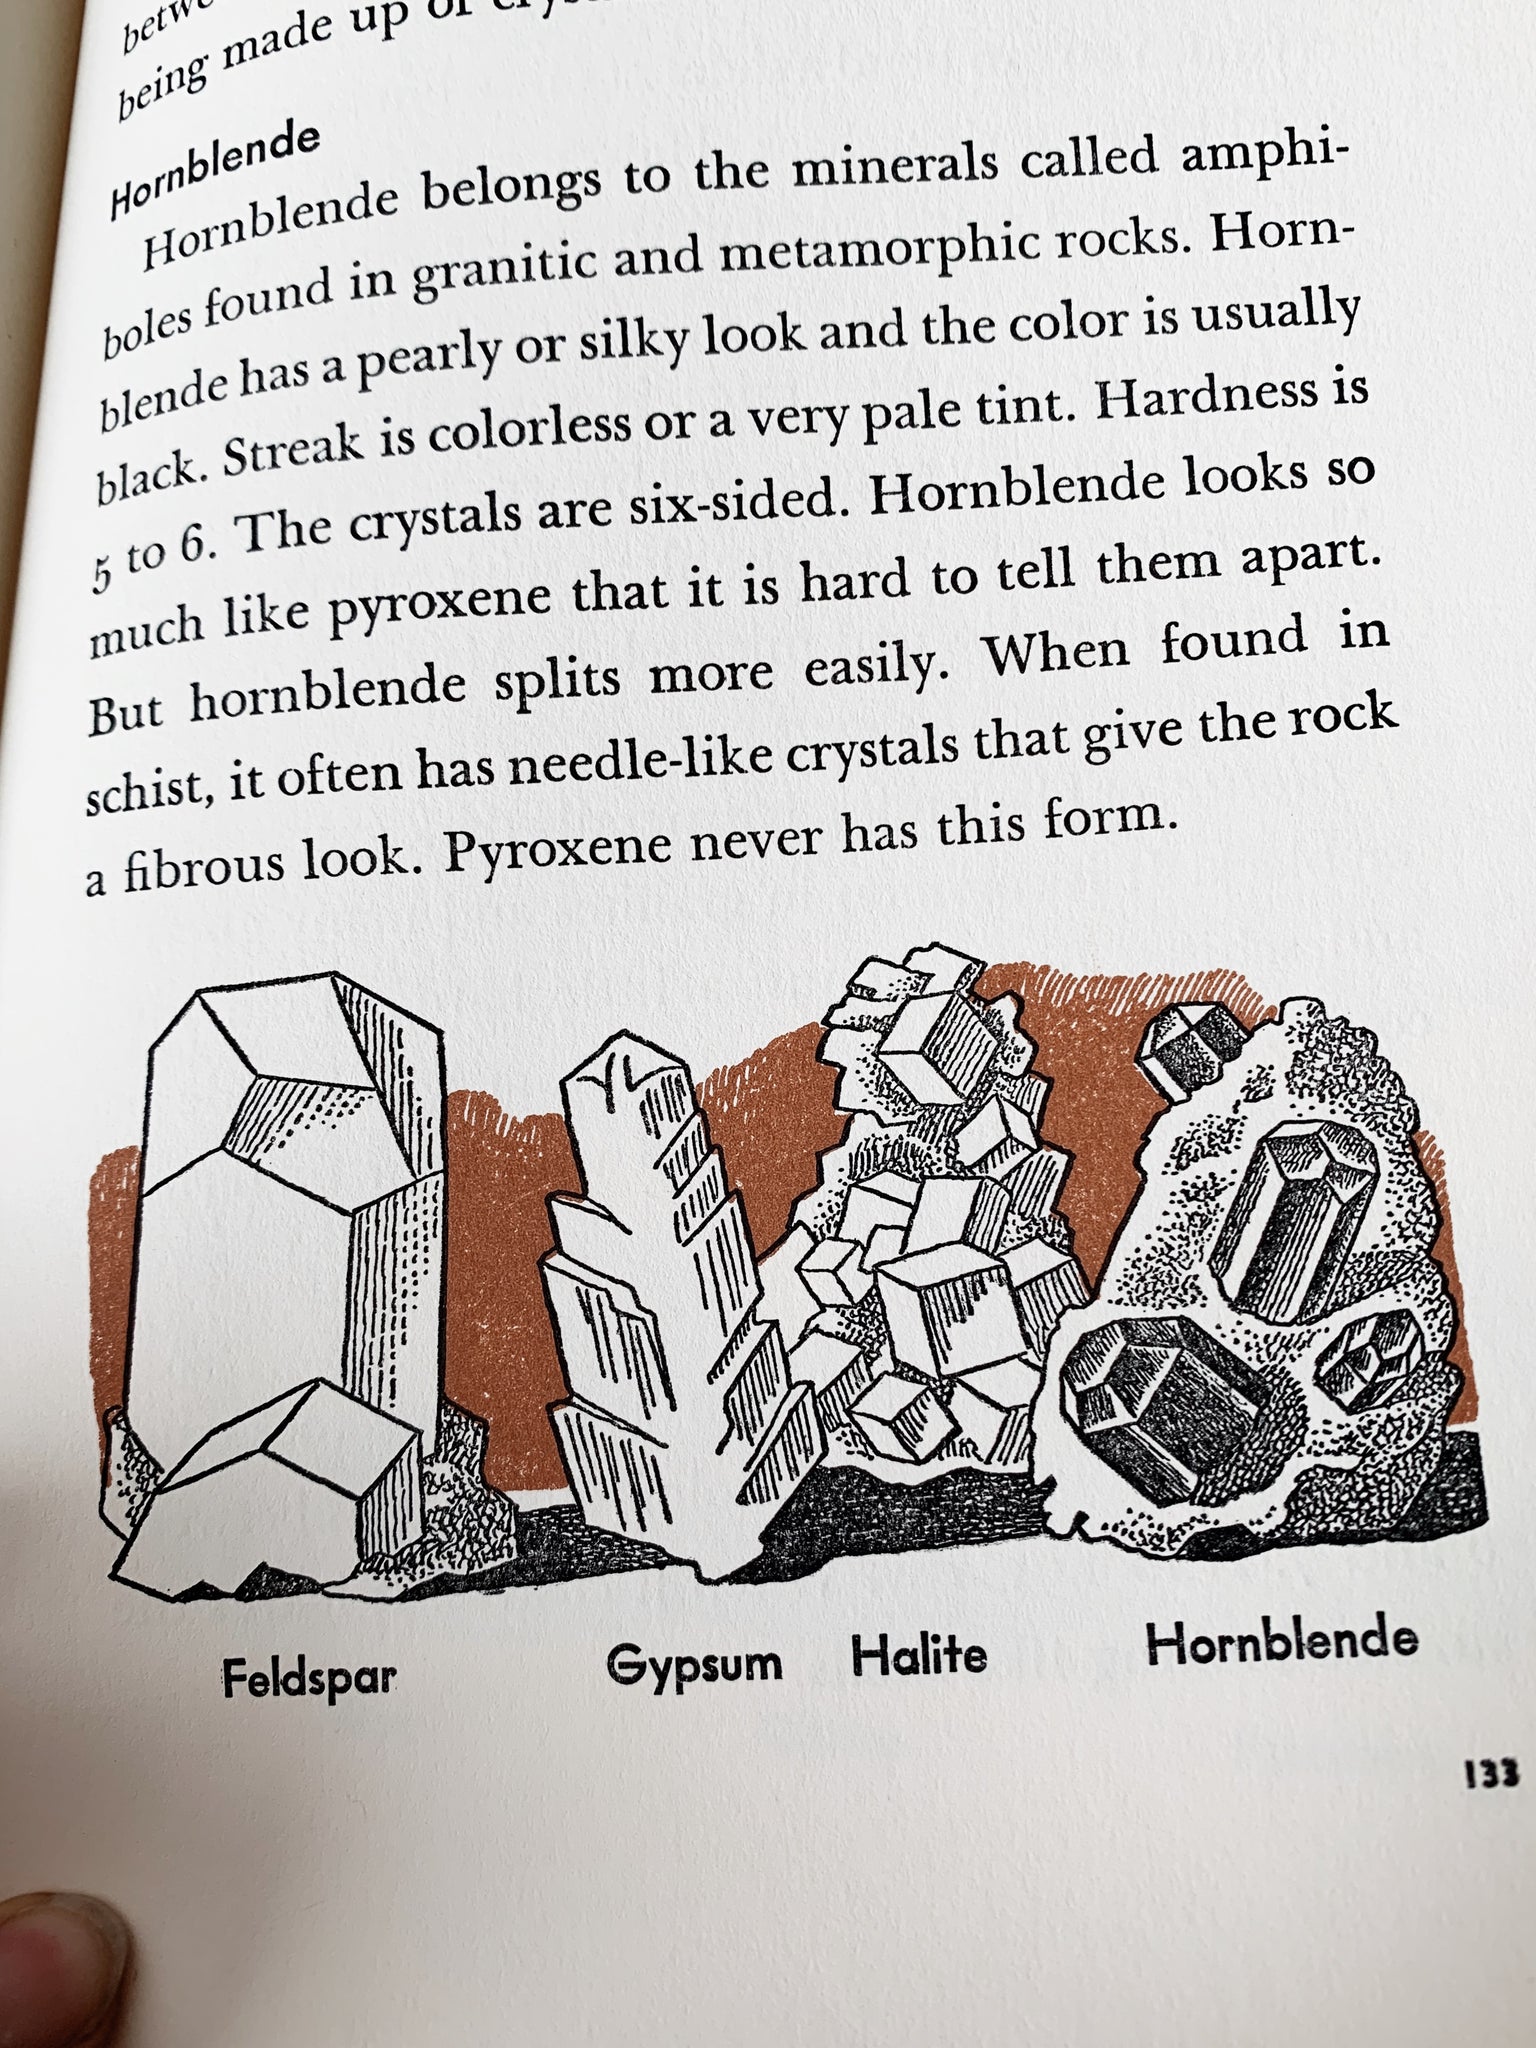 1950’s Middle Reader Rocks Book